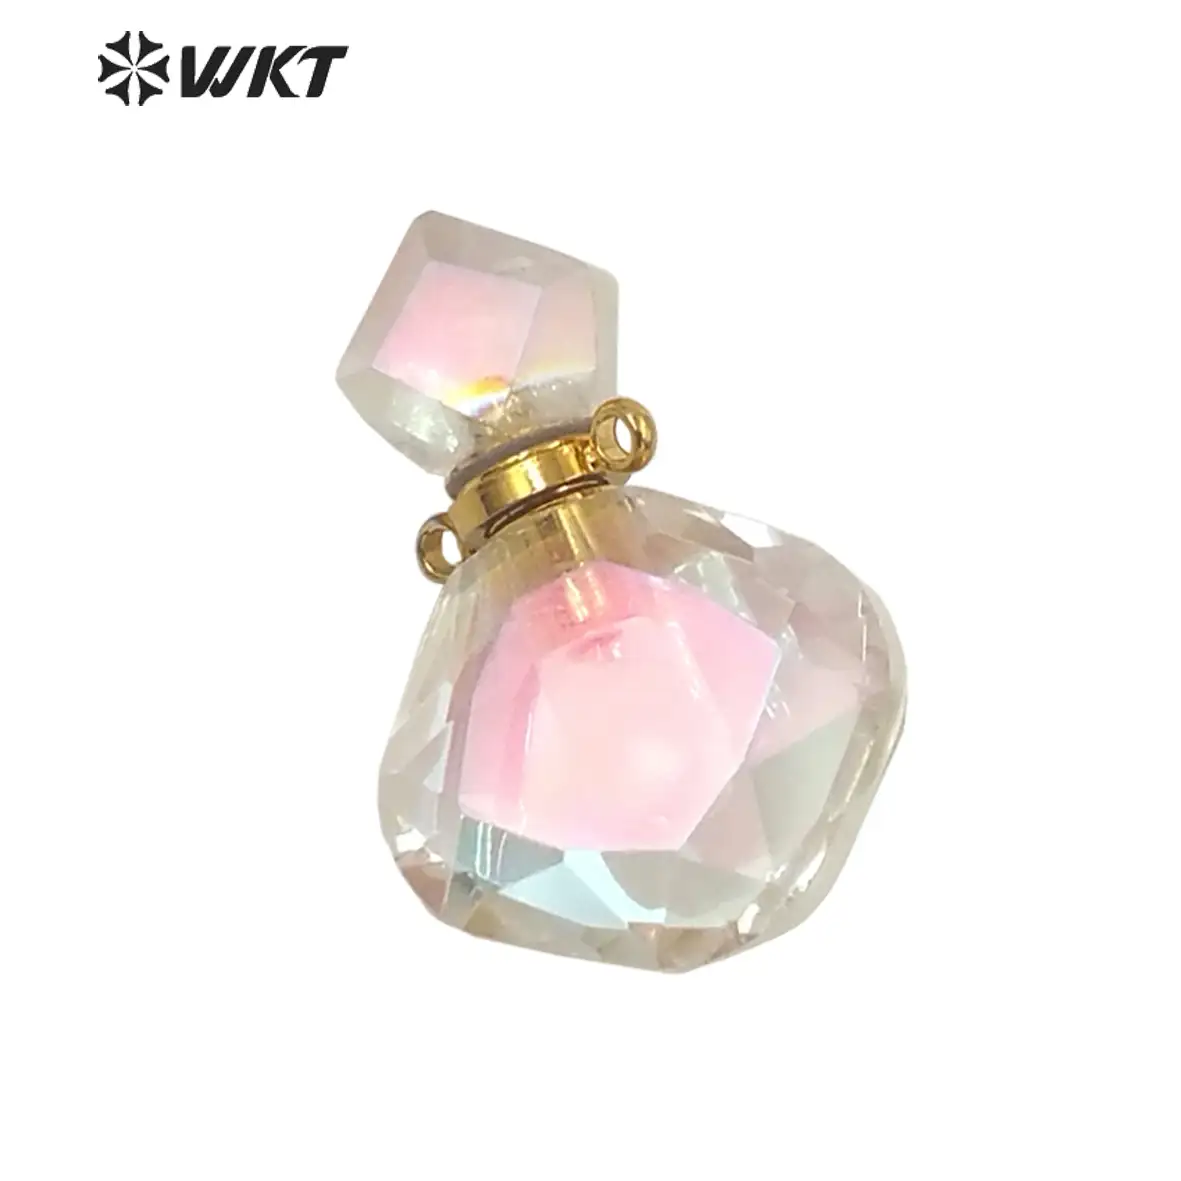 WT-P1674 Amazing Newest fashion faceted cut Angel Aura quartz perfume bottle pendant for necklace